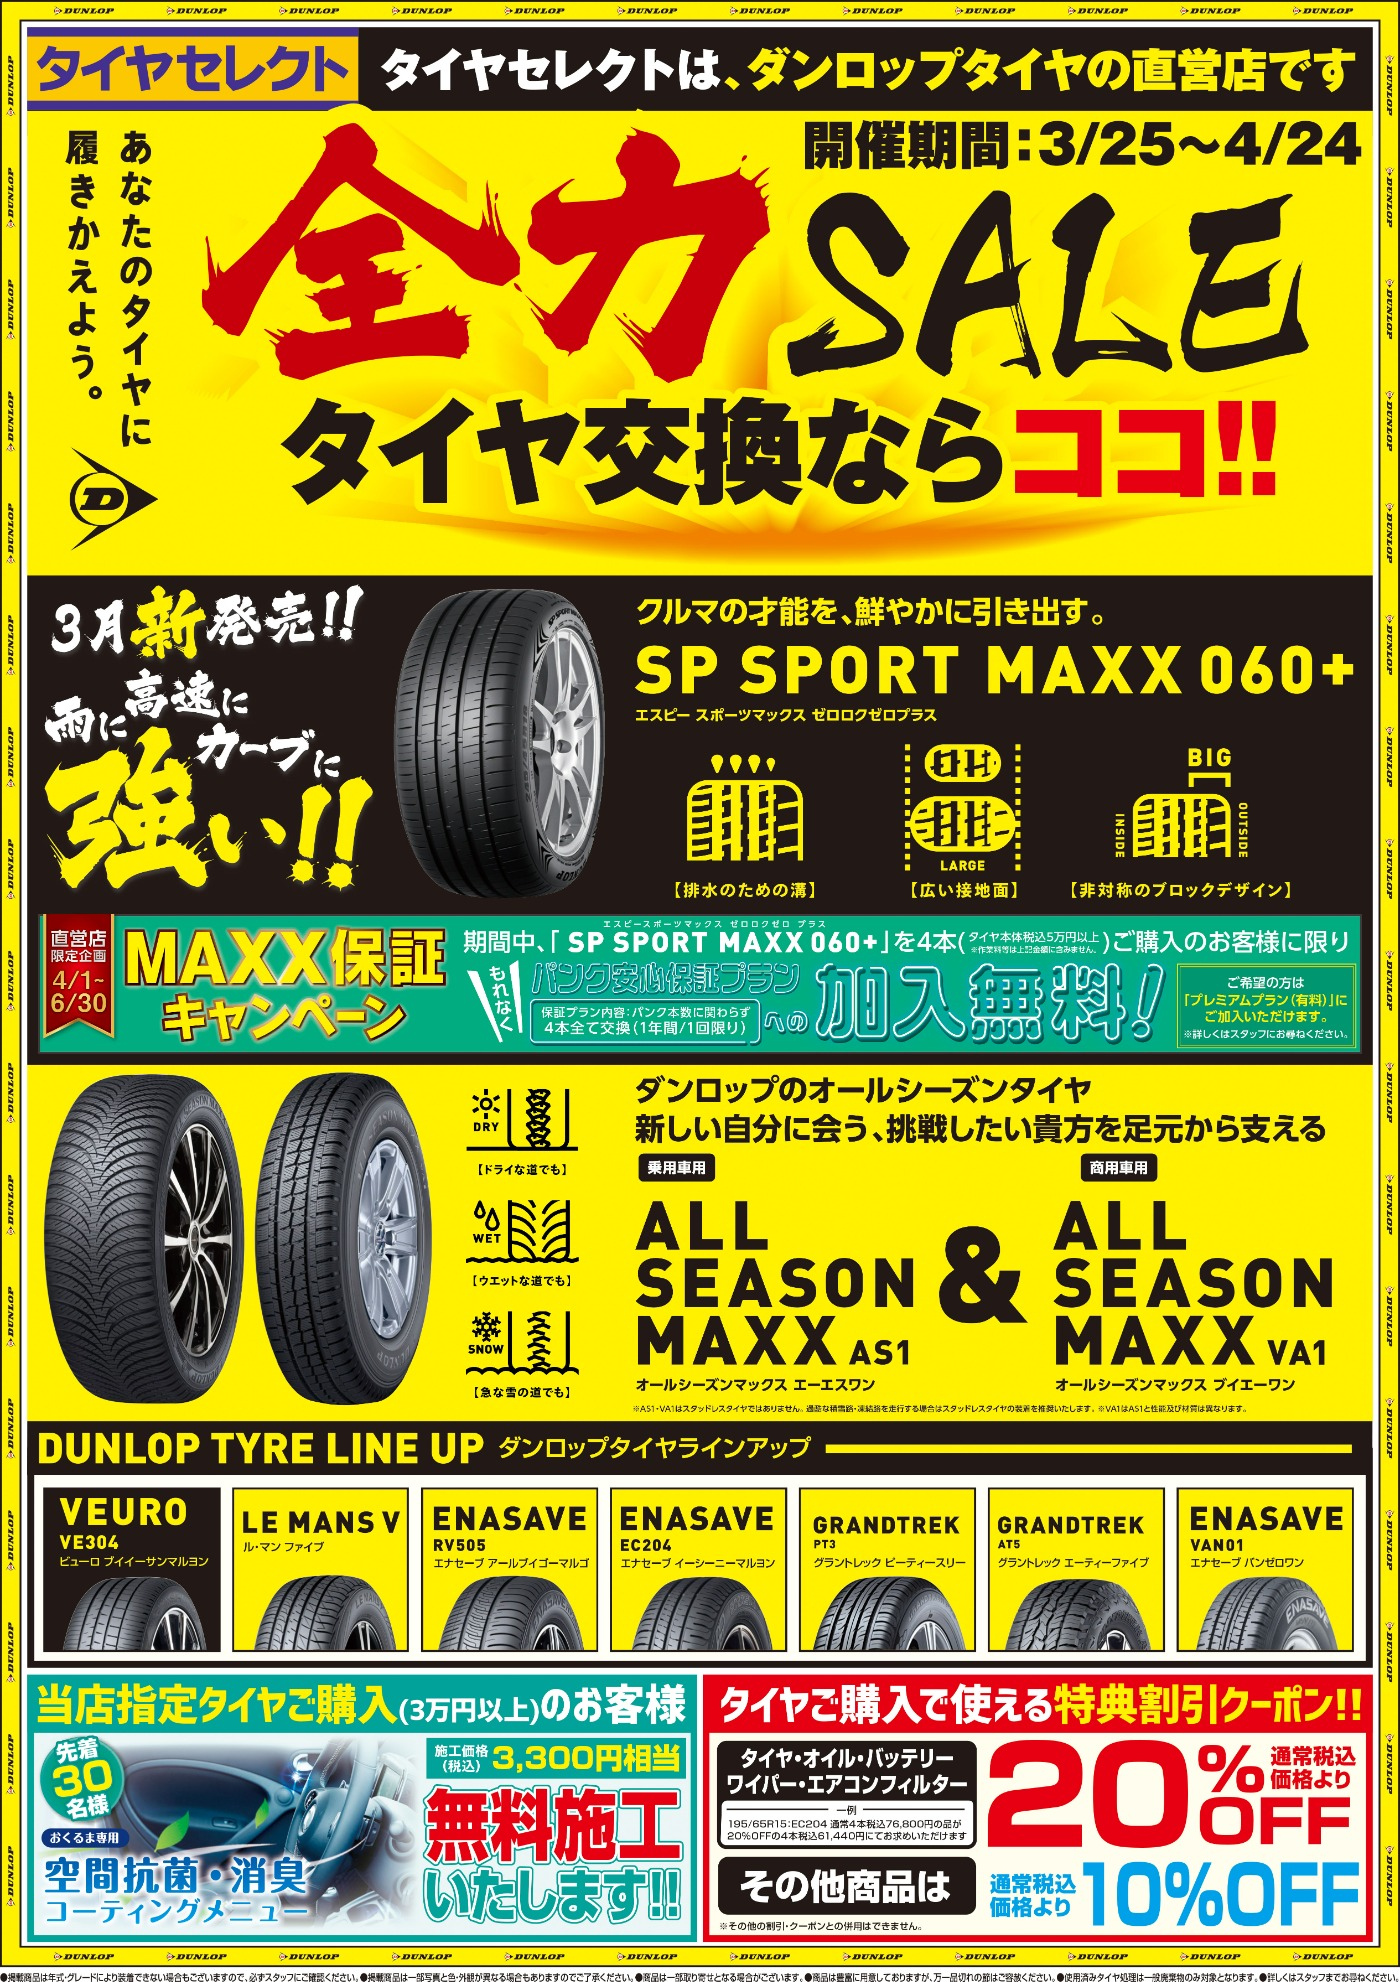 SPSPORTMAXX060+ | お知らせ | タイヤセレクト八千代 | タイヤセレクト 